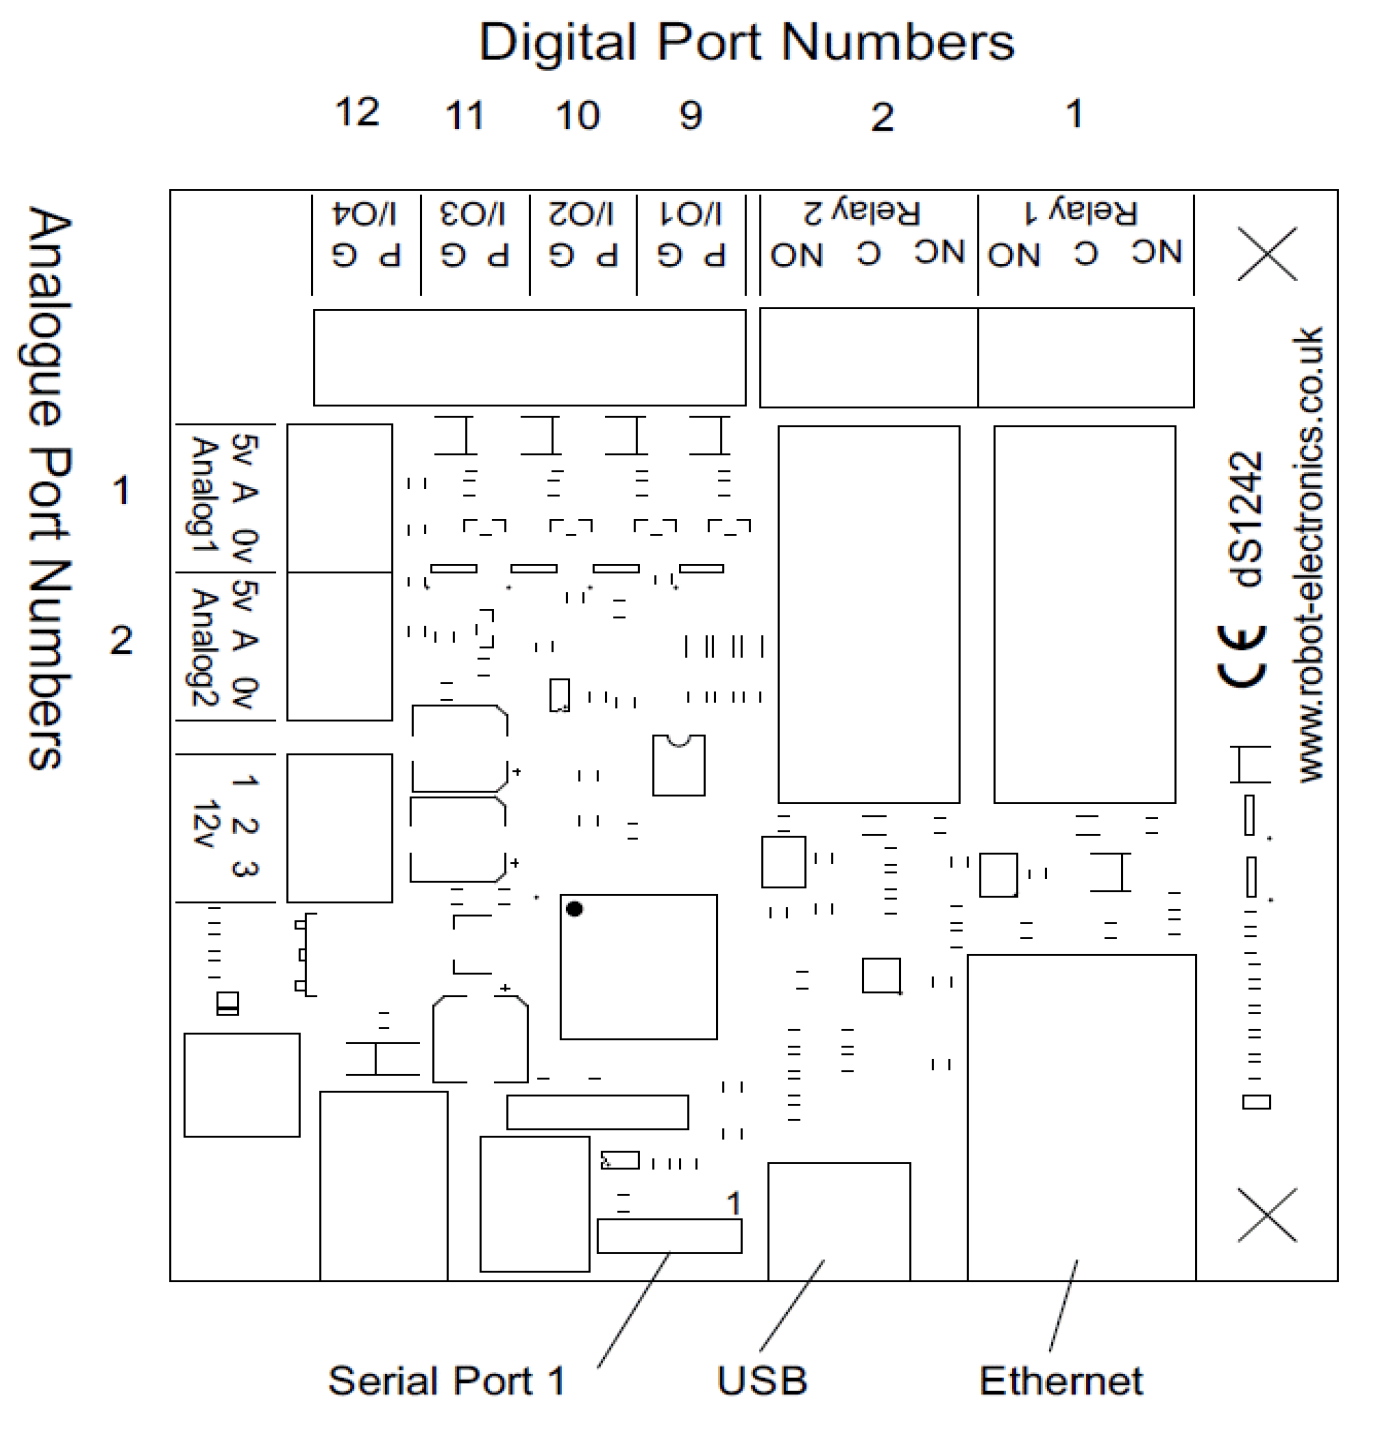 Digital port numbers